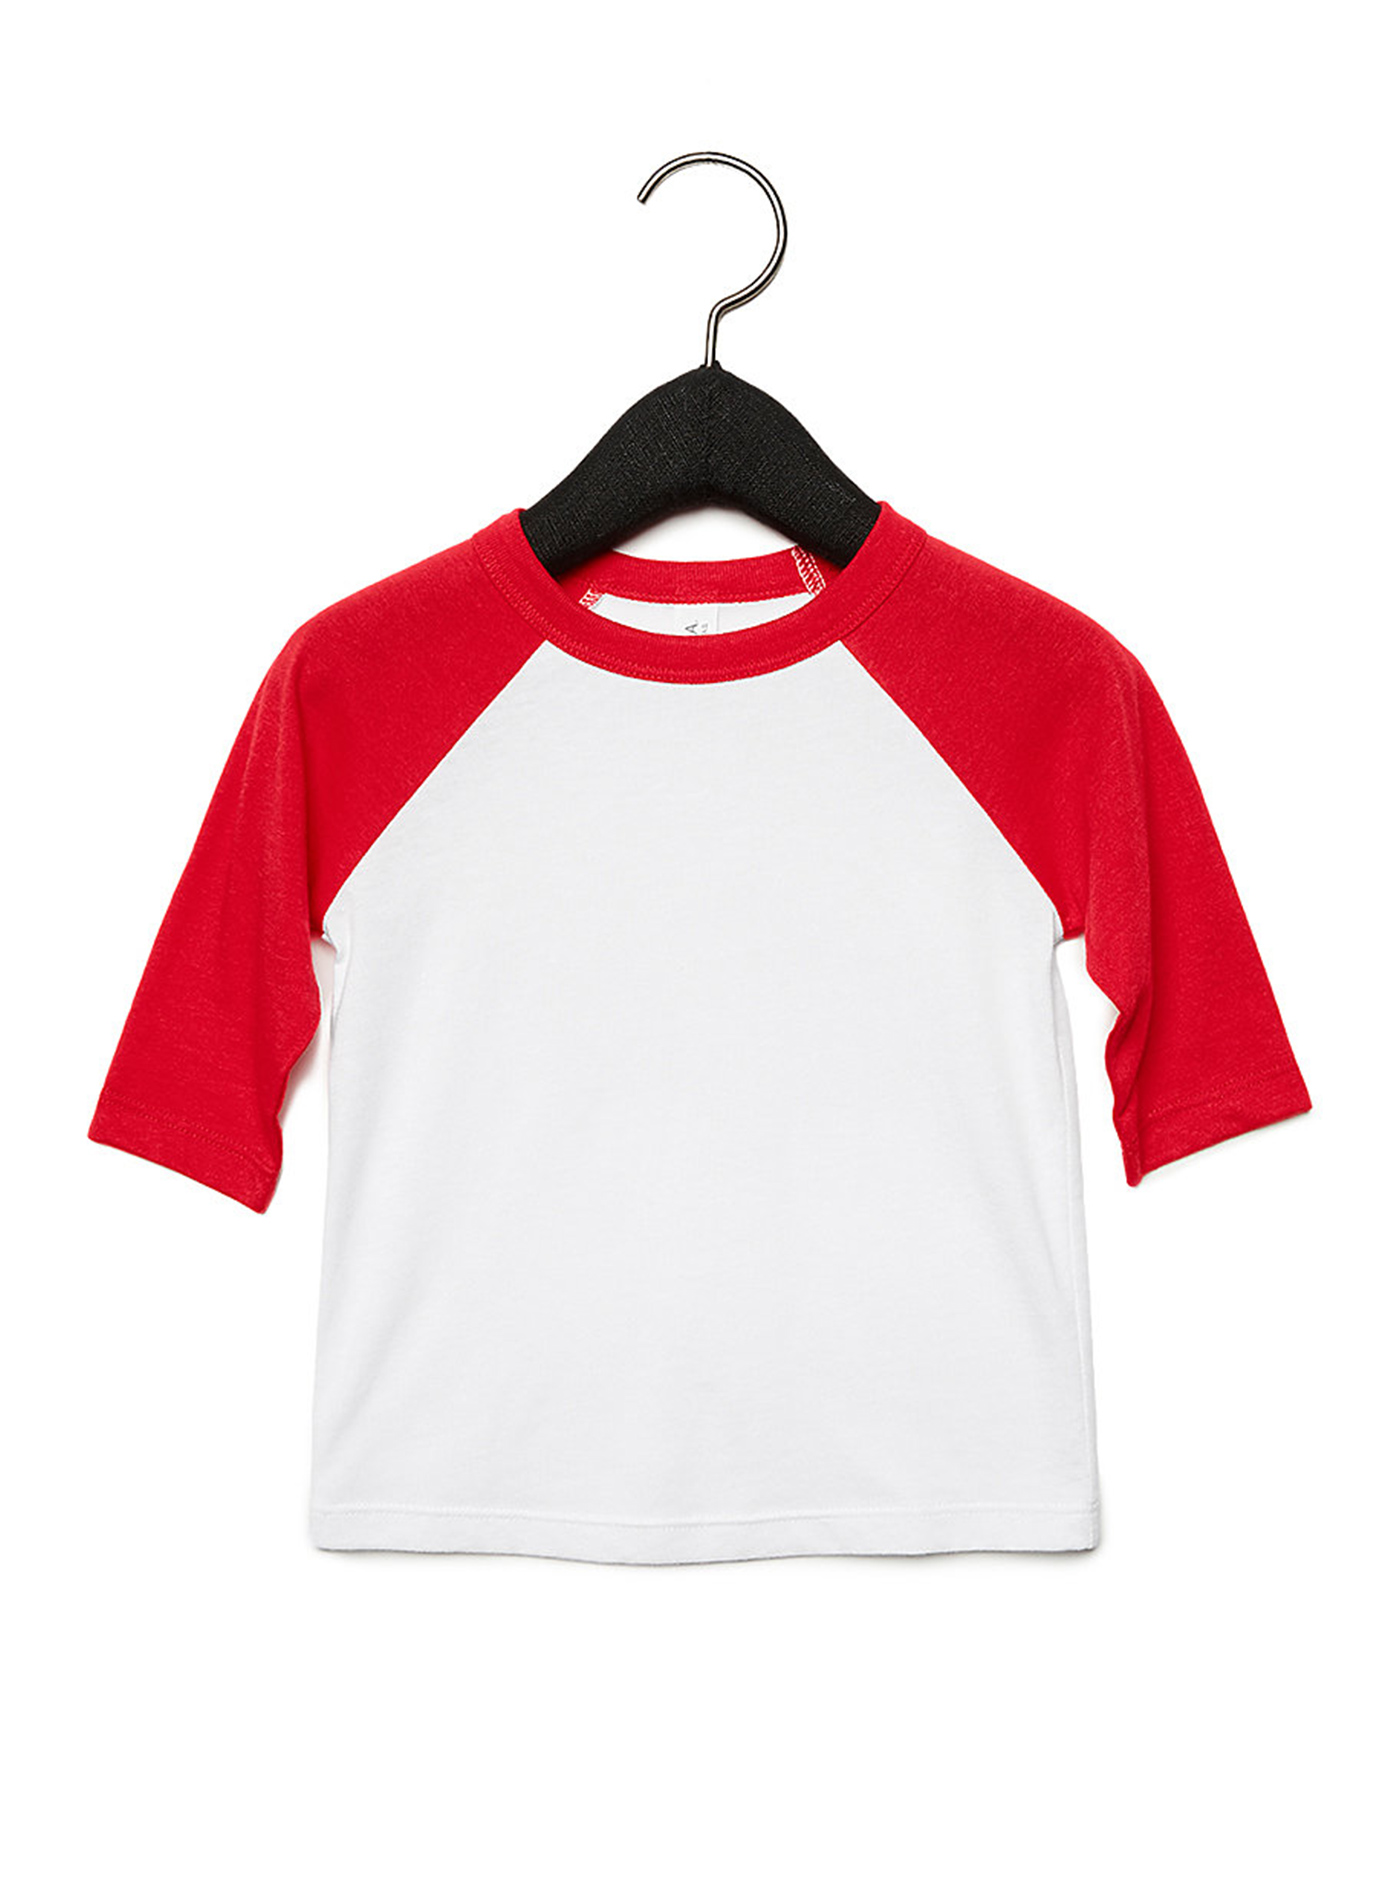 Dětské tričko se 3/4 rukávem Bella+Canvas Baseball Tee - Bílá a červená 3T (98)